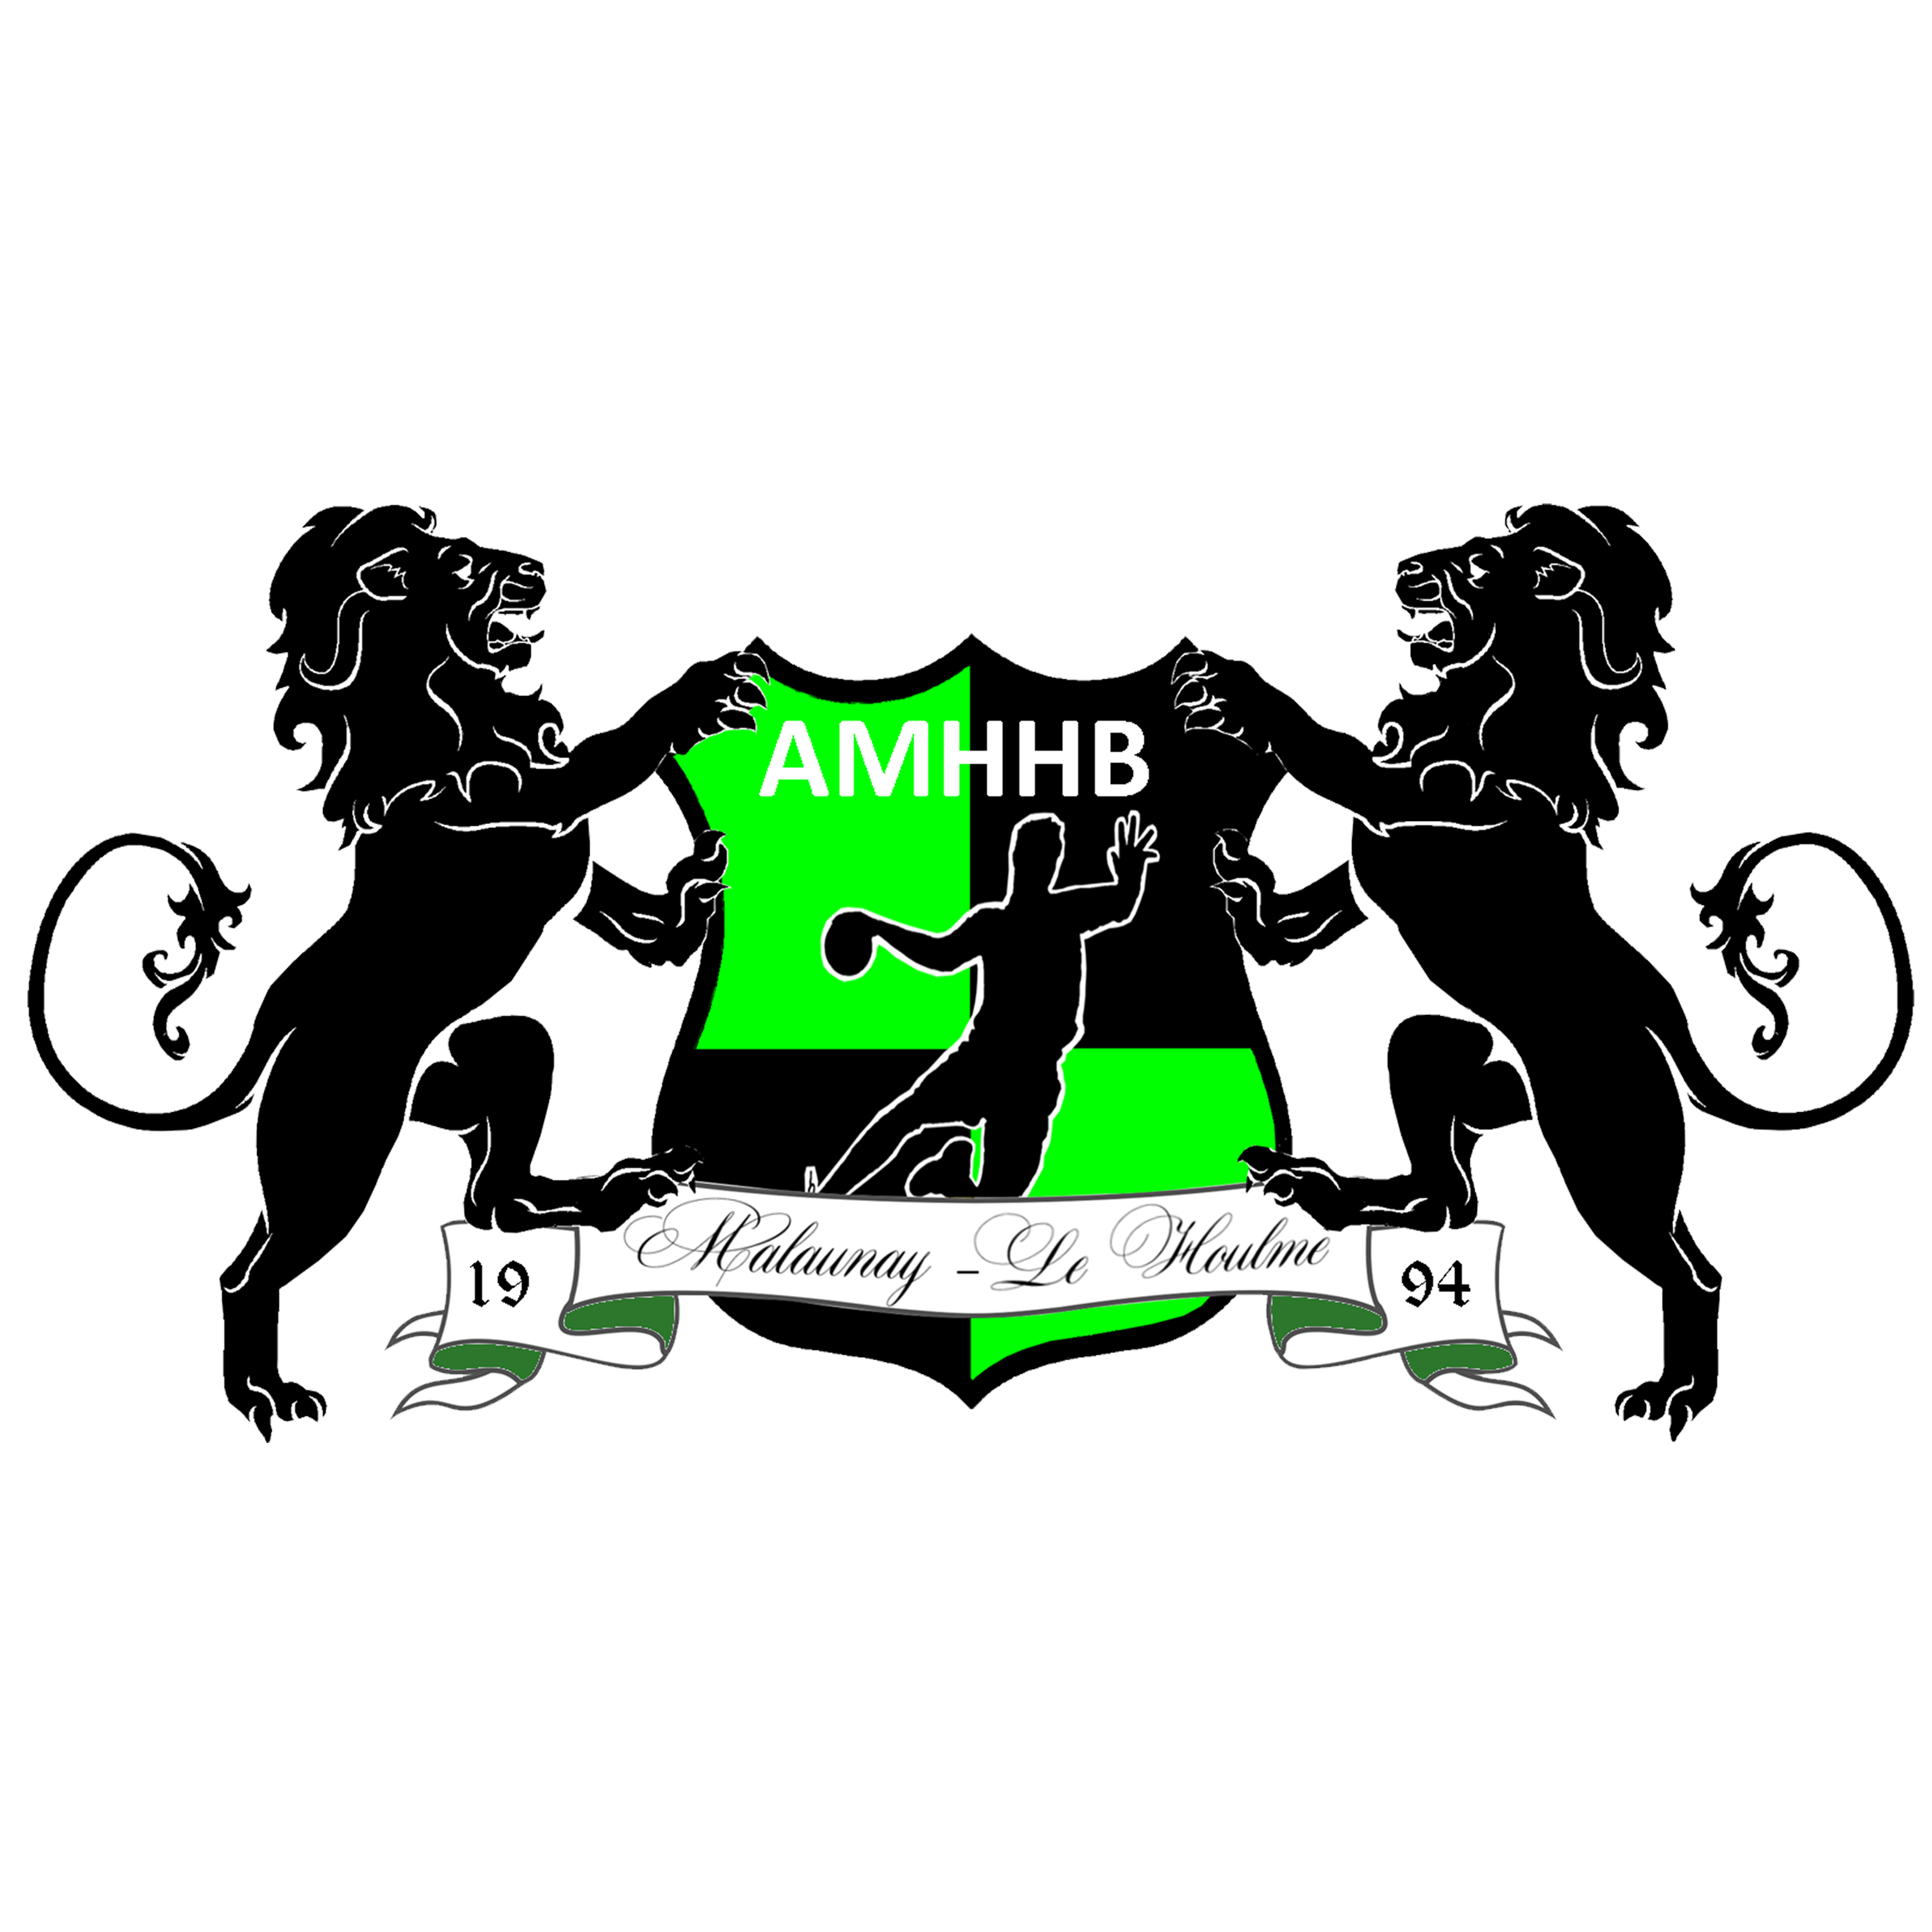 AMHHB (Ass. Malaunay Le Houlme Handball)